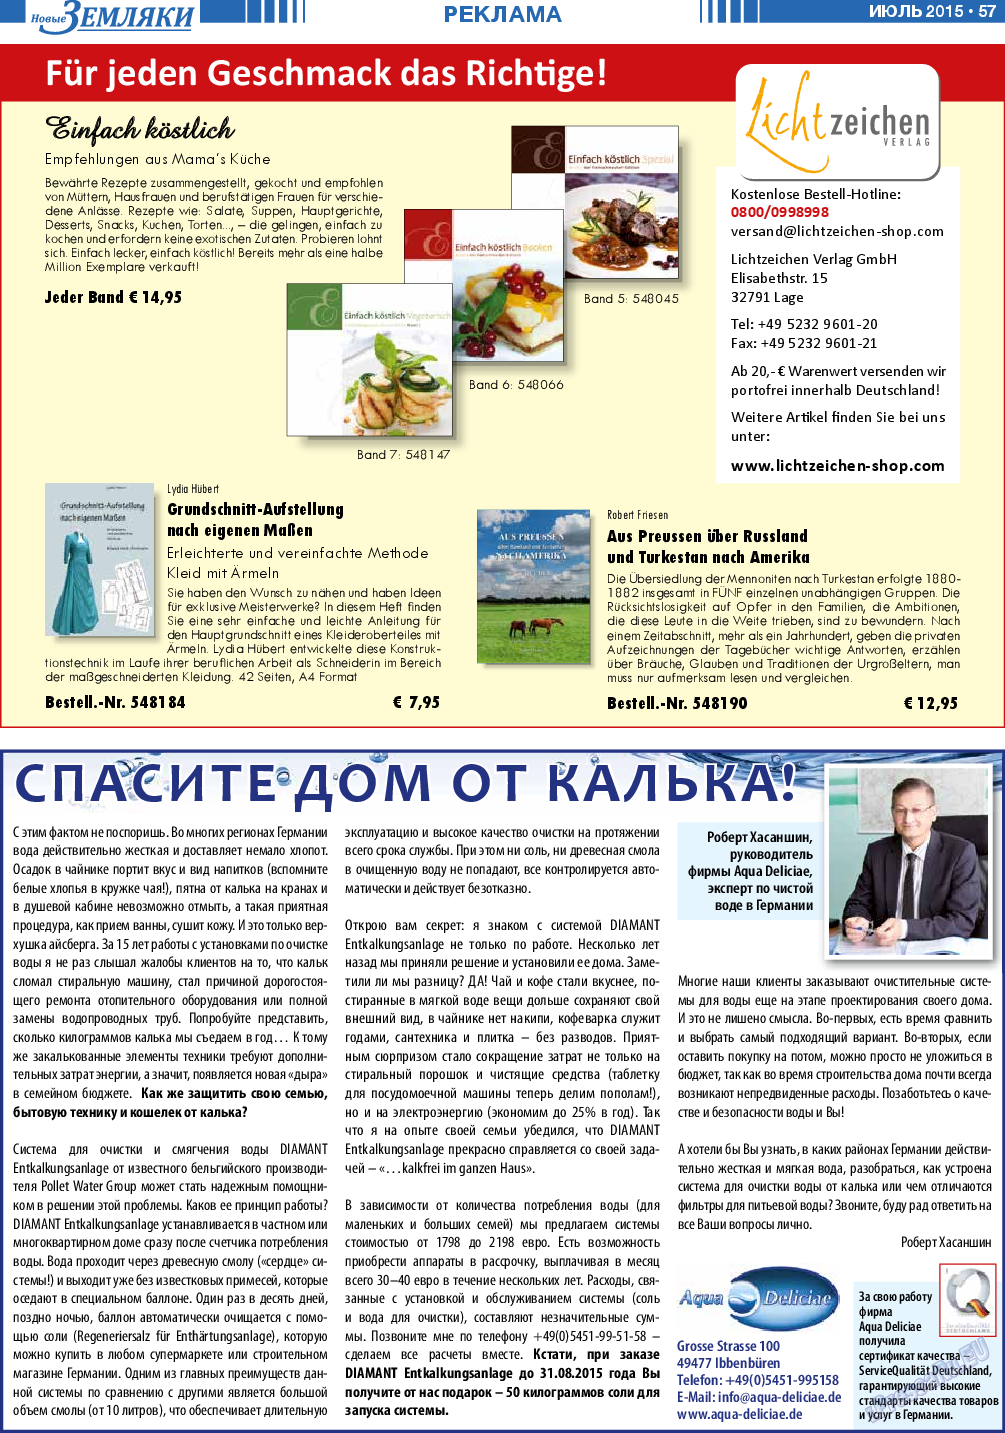 Новые Земляки, газета. 2015 №7 стр.57